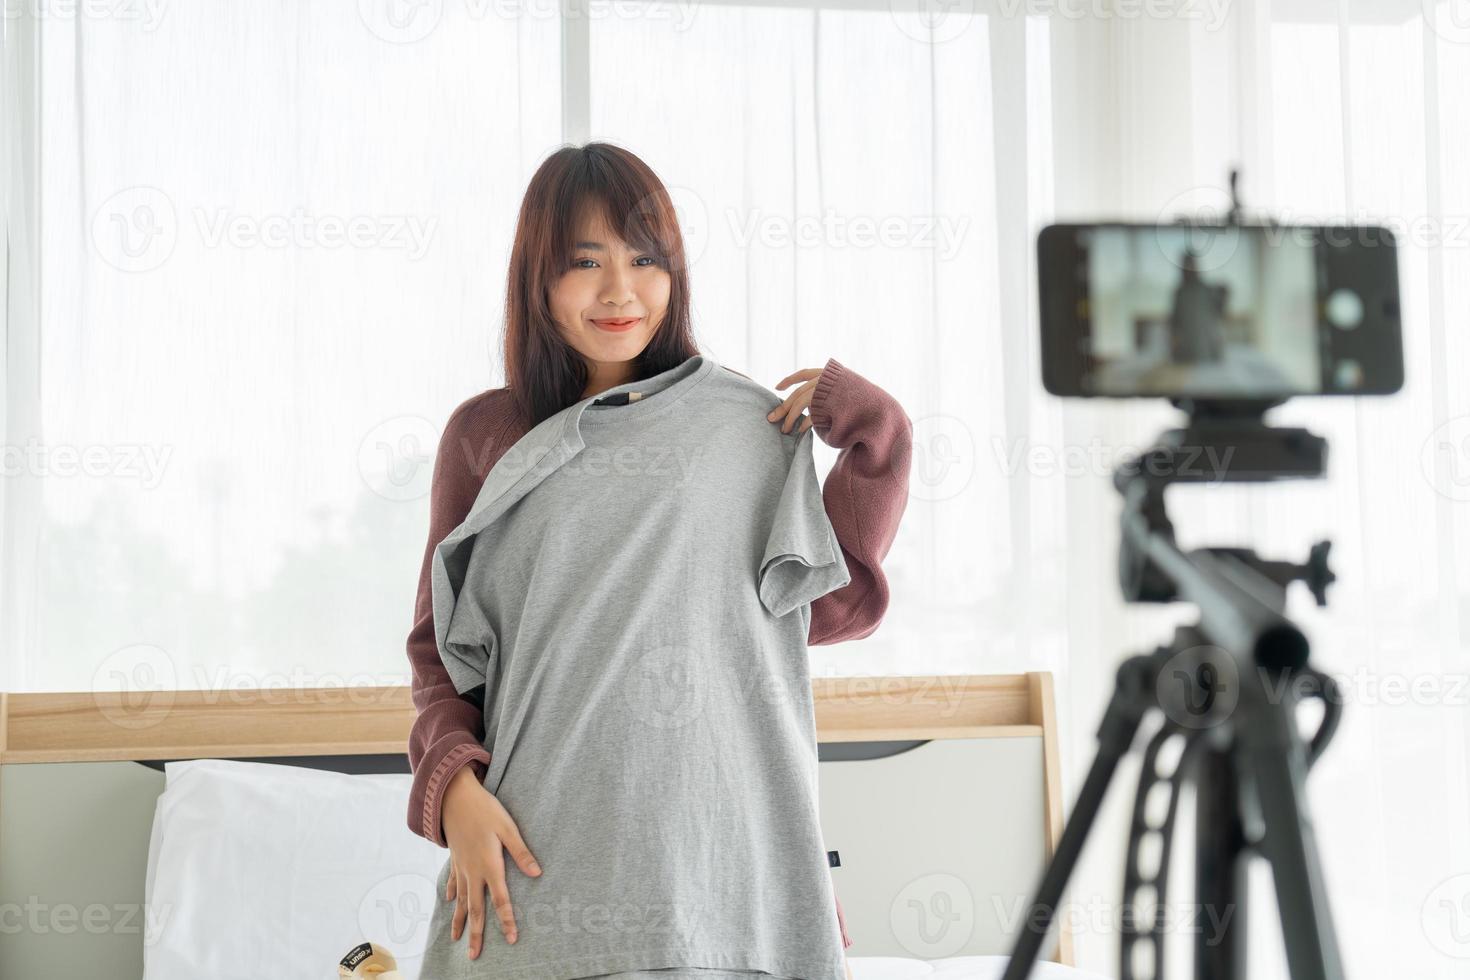 Schöne asiatische Bloggerin, die Kleidung vor der Kamera zeigt, um Vlog-Video-Live-Streaming in ihrem Geschäft aufzunehmen - Online-Influencer auf Social-Media-Konzept foto